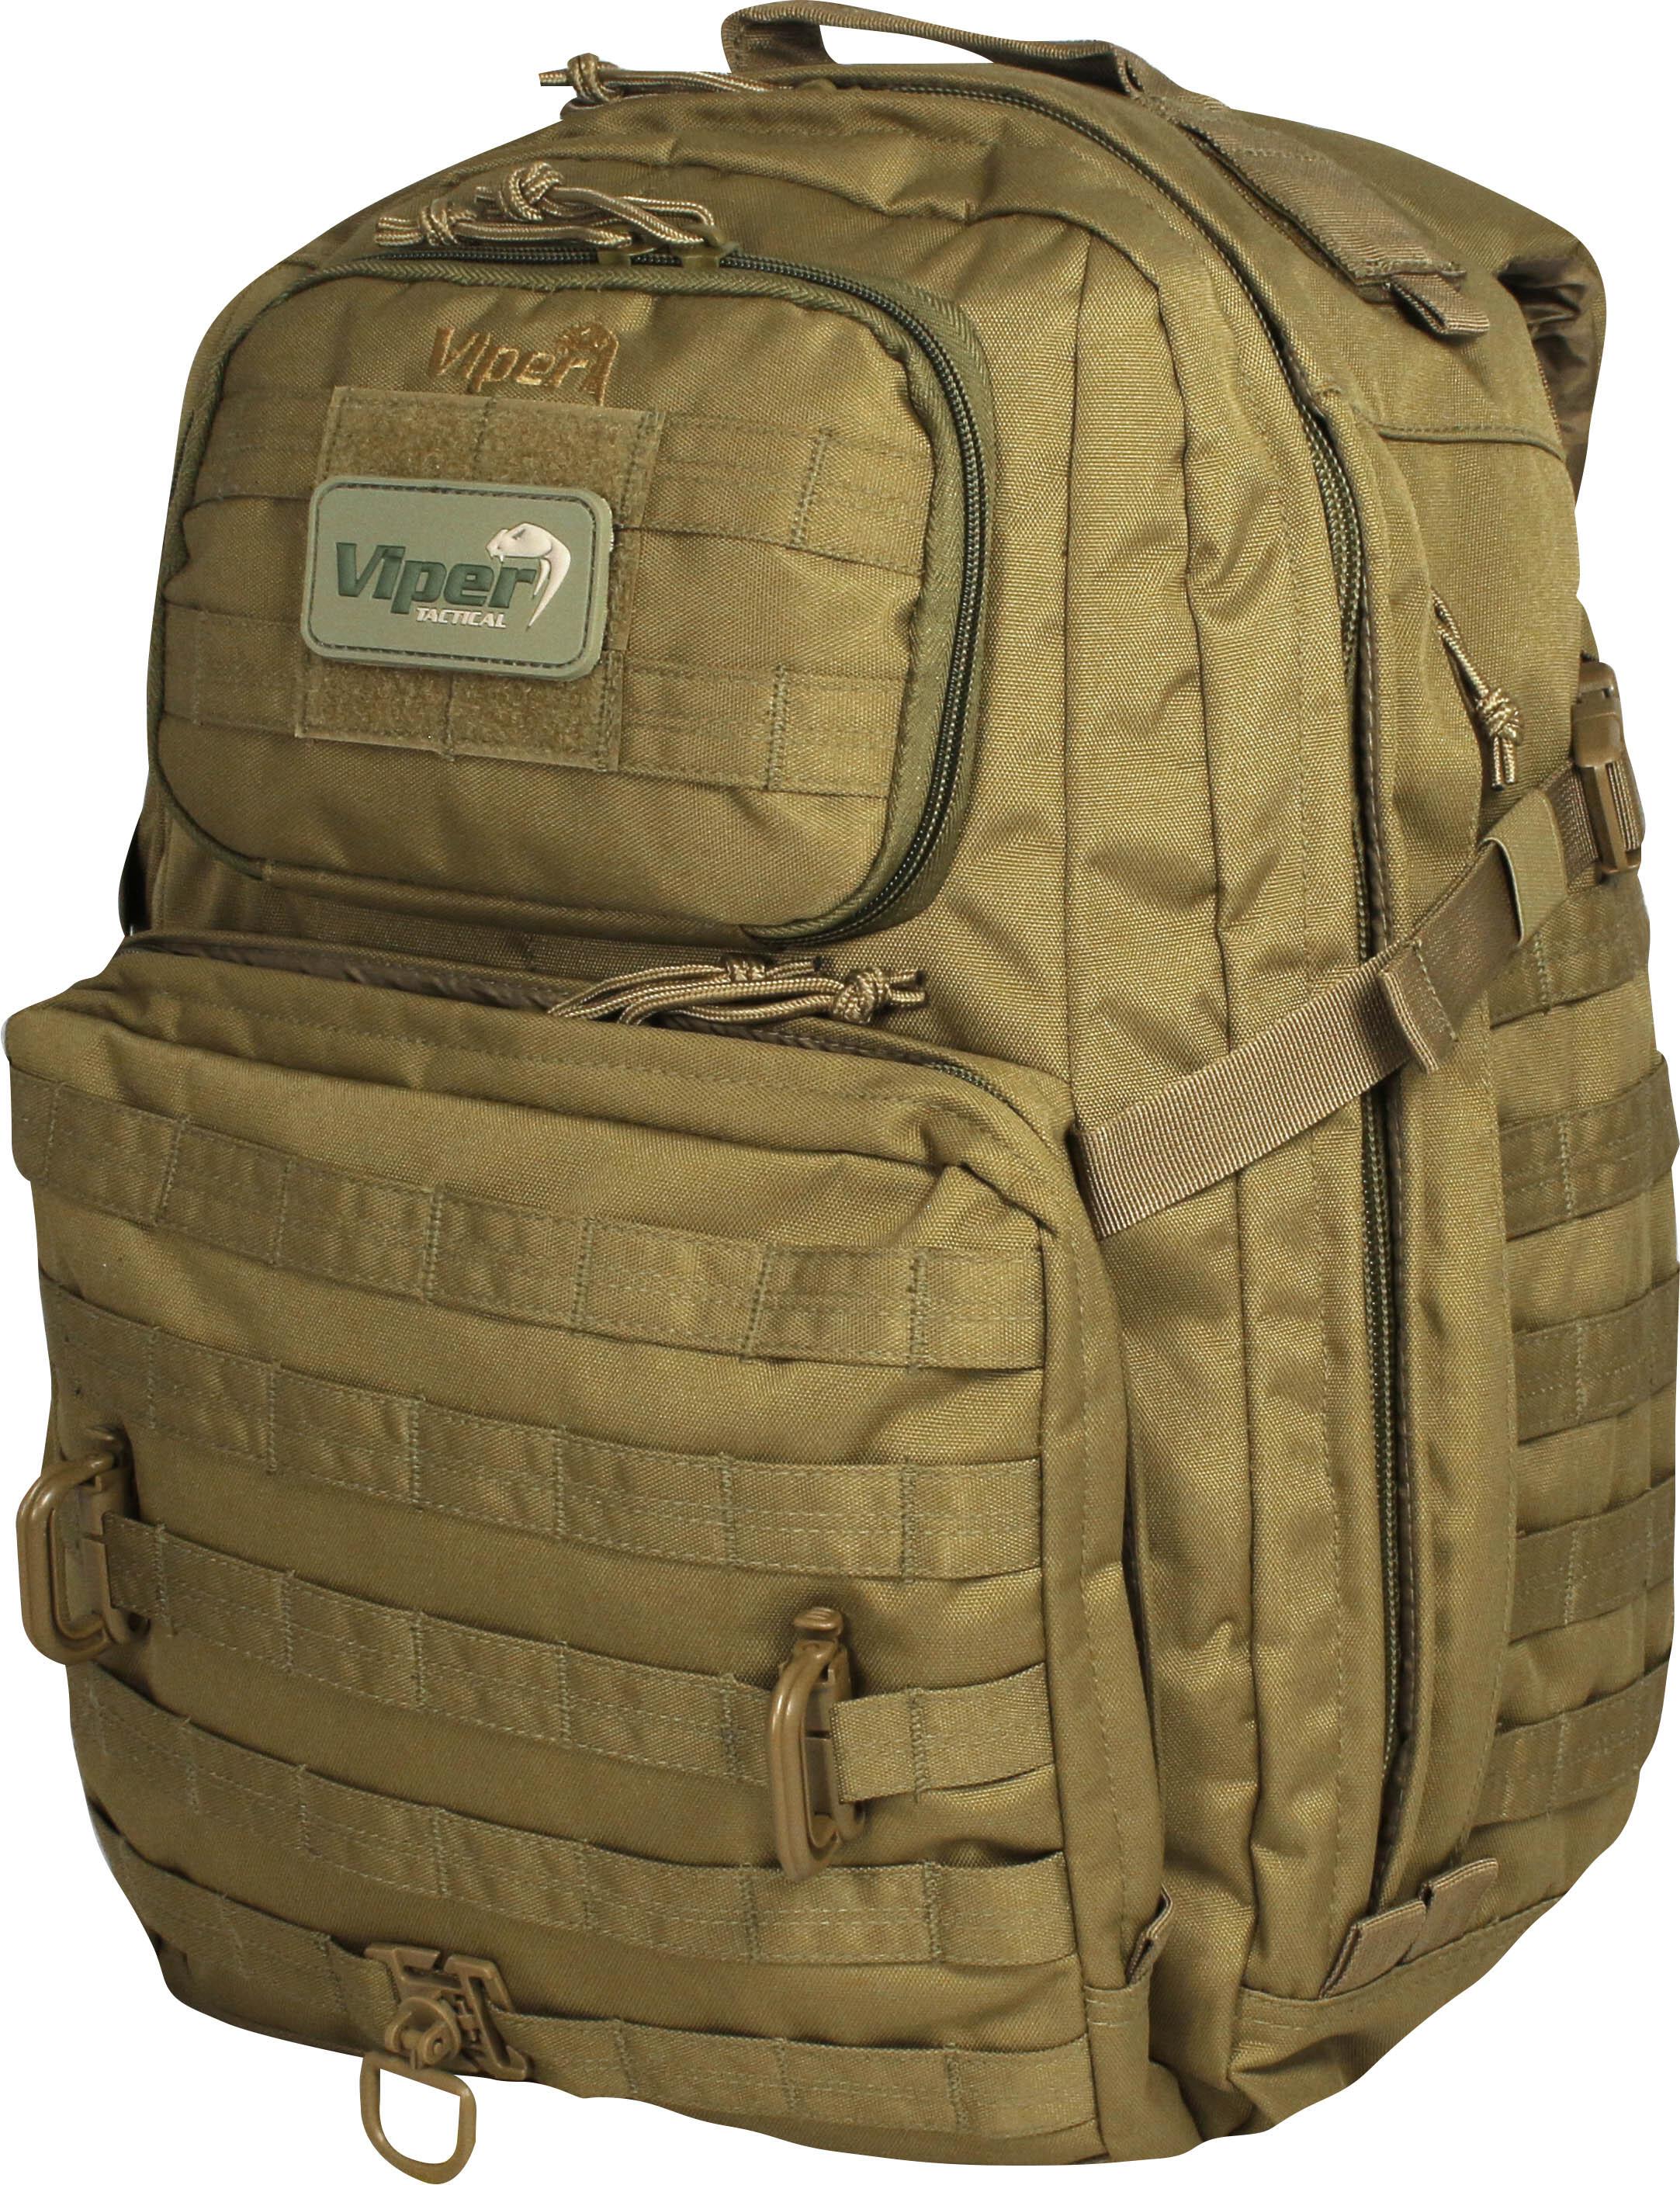 Viper Tactical Ranger Pack